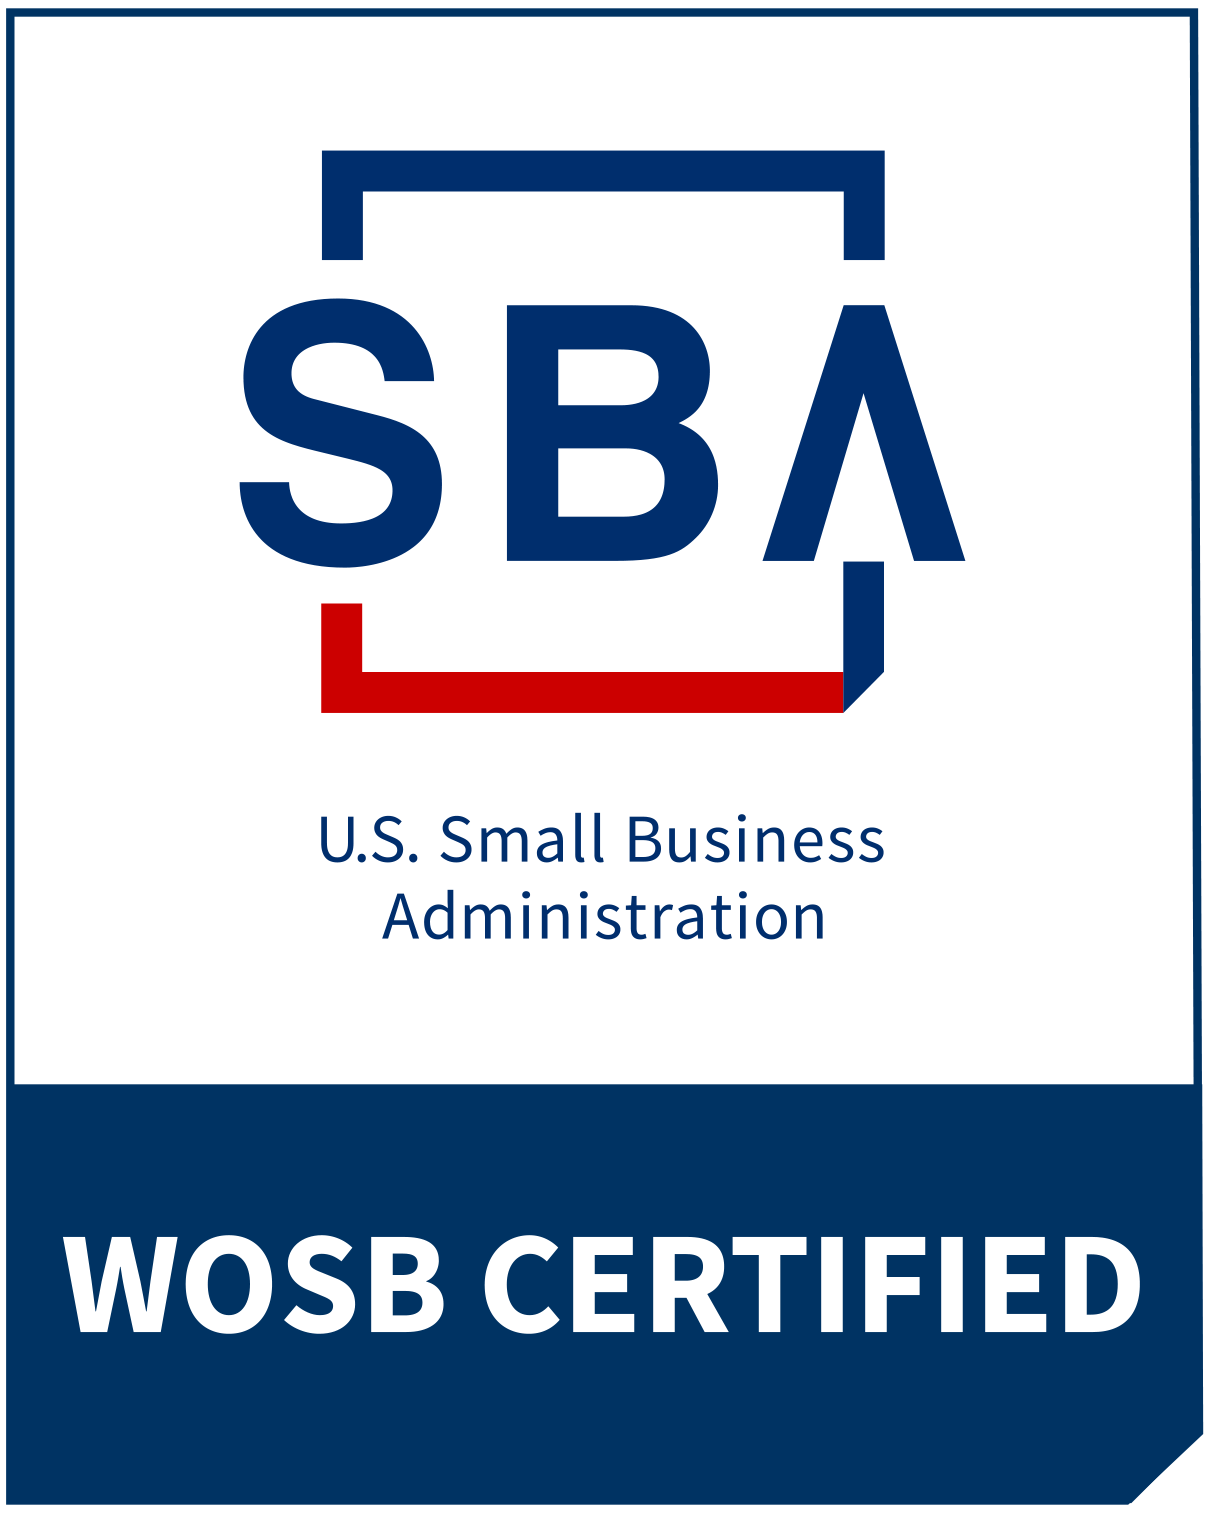 SBA WOSB Logo